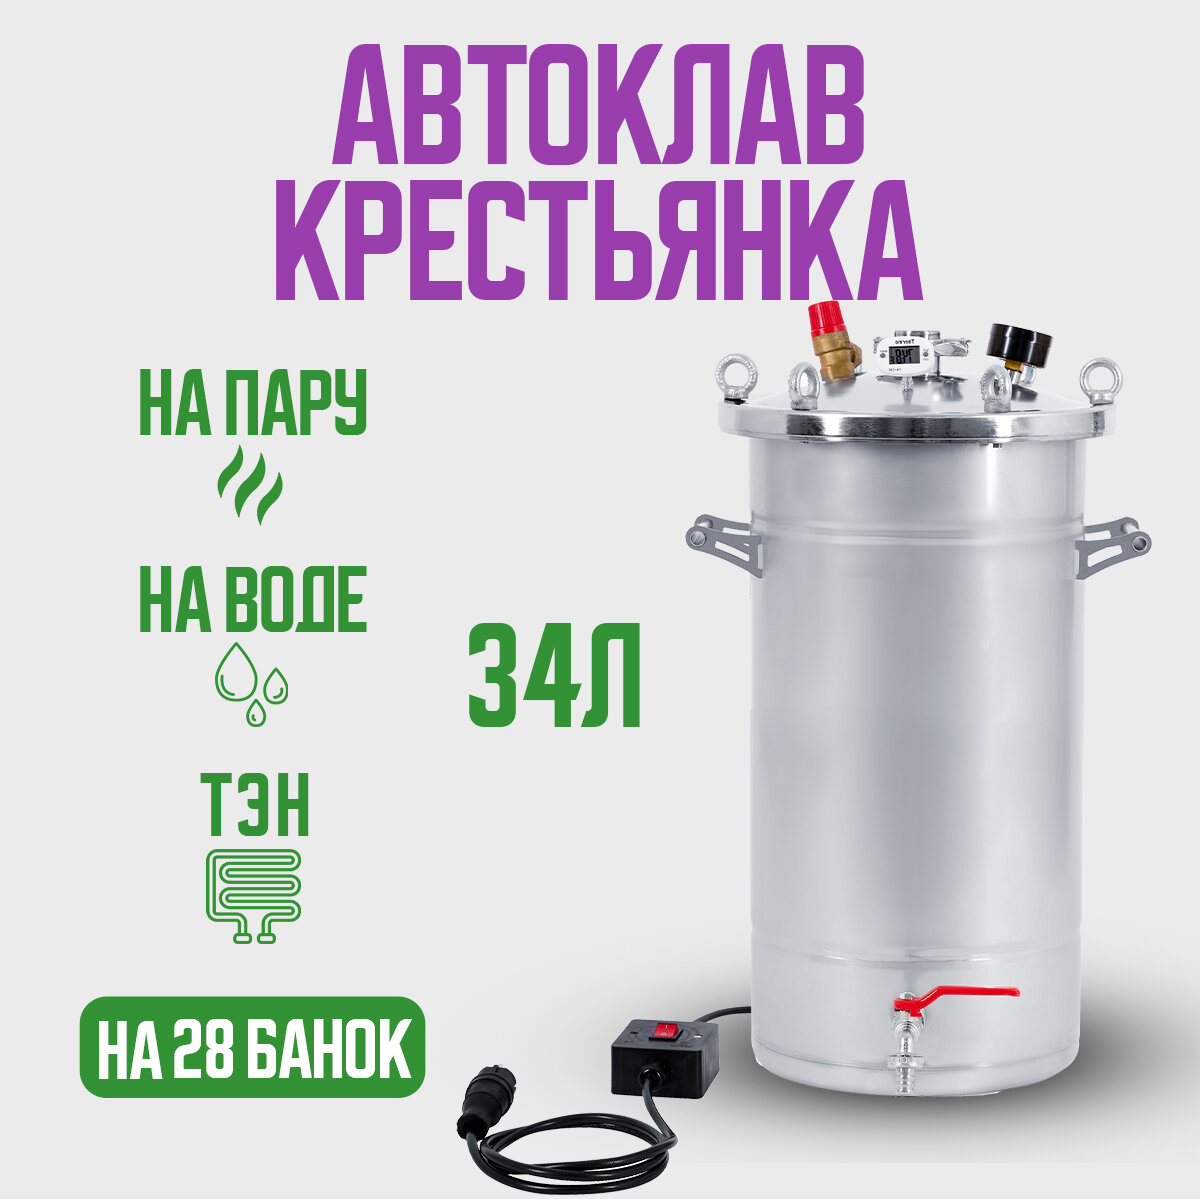 Автоклав Крестьянка на 34 литра+ТЭН для домашнего консервирования